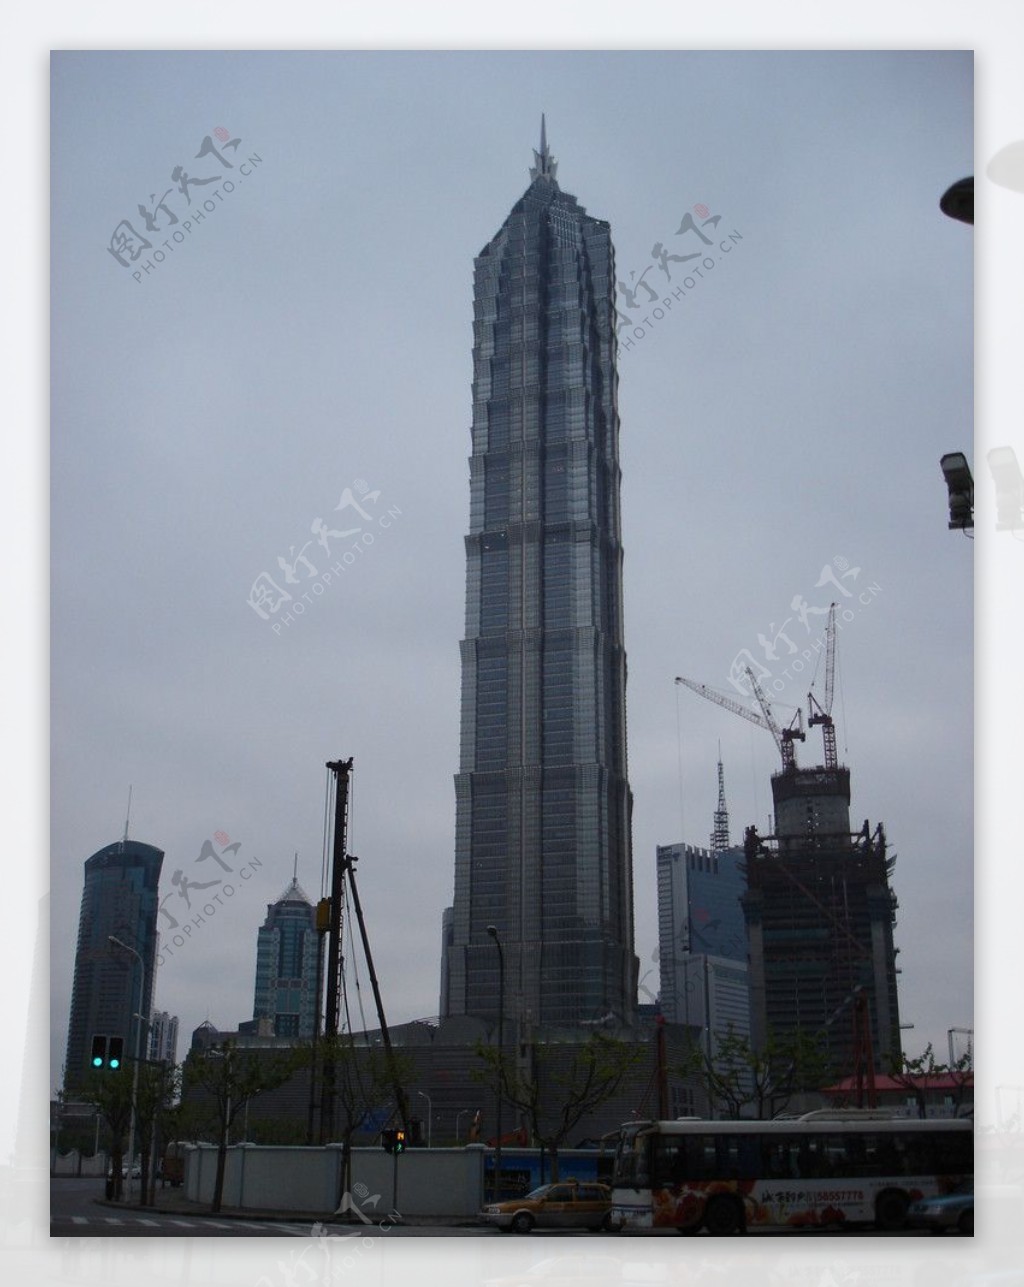 上海金茂大厦图片